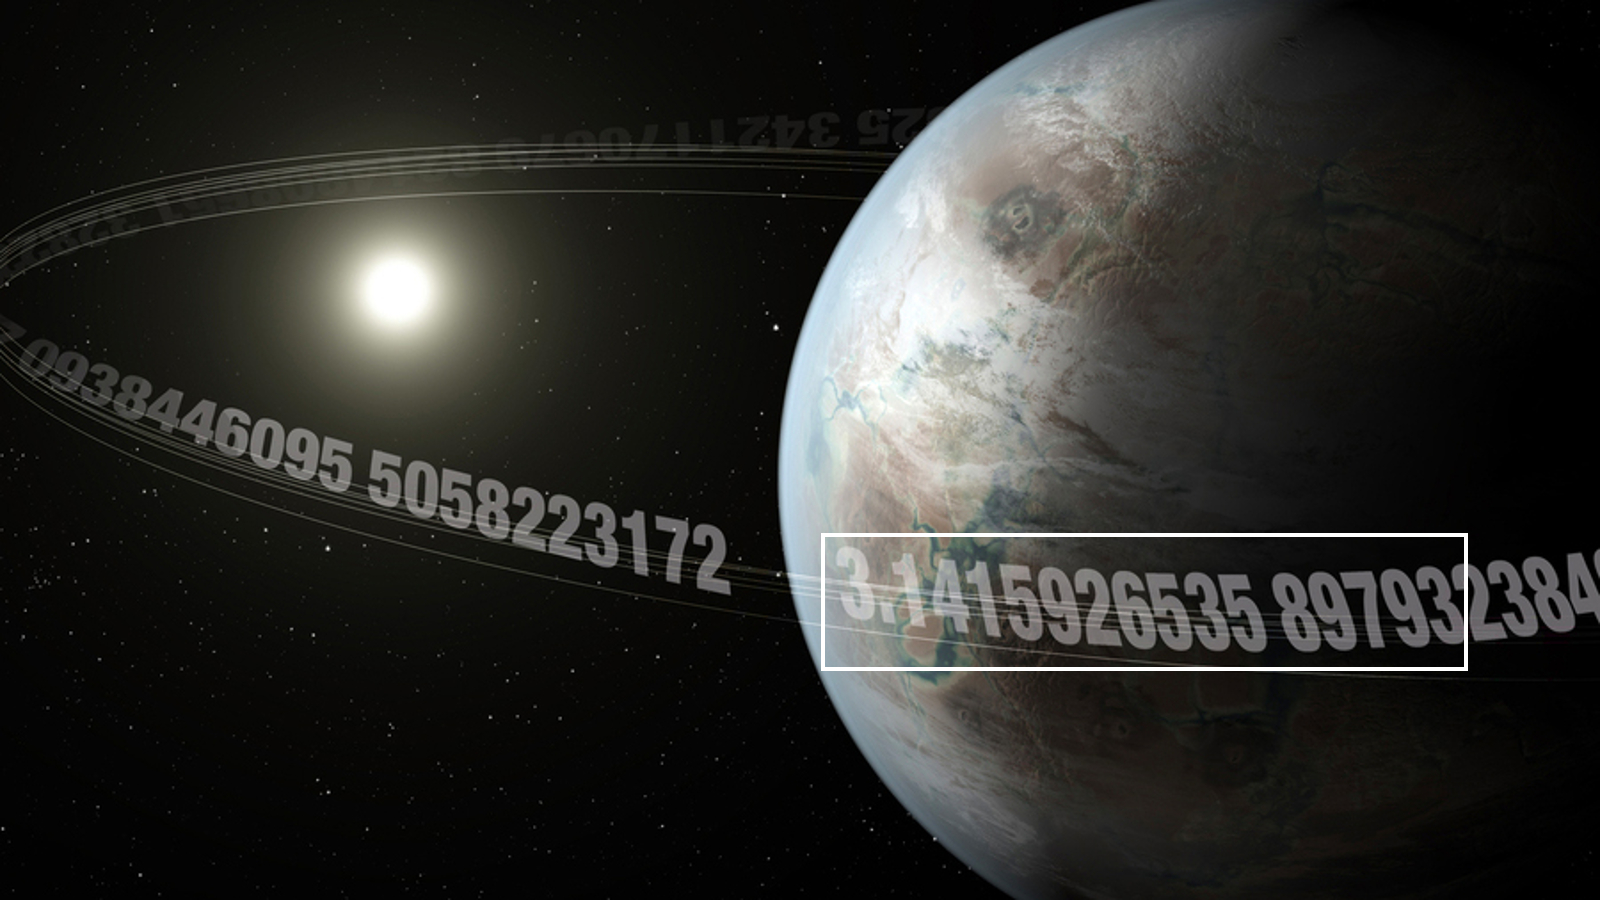 Планета, окруженная числом пи, с выделенными первыми 15 знаками после запятой.